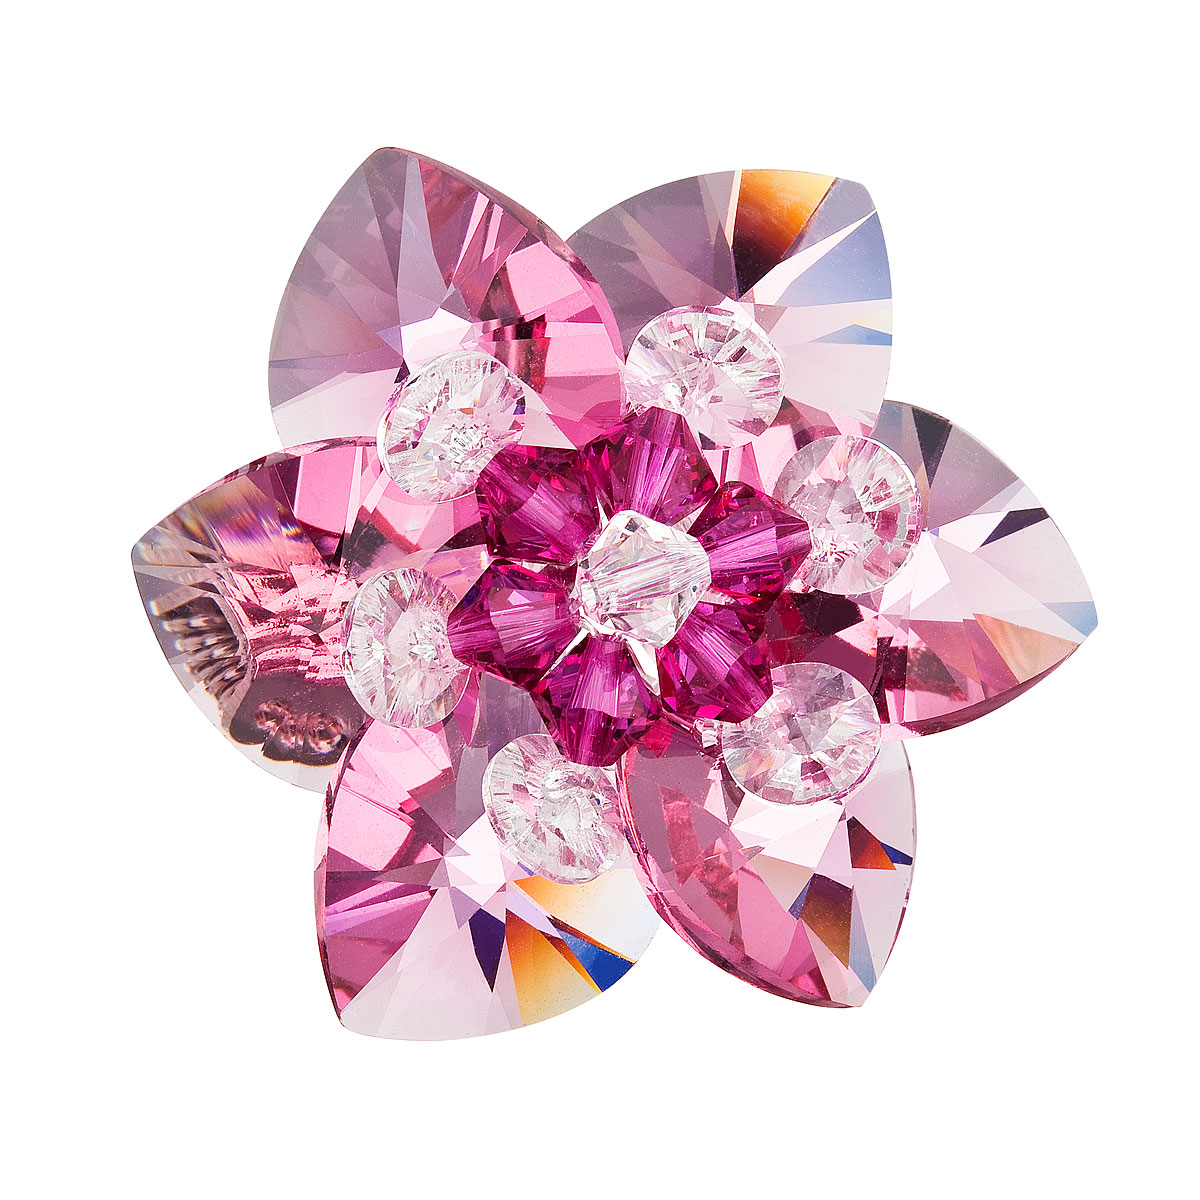 Brož bižuterie se Swarovski krystaly růžová kytička 78002.3